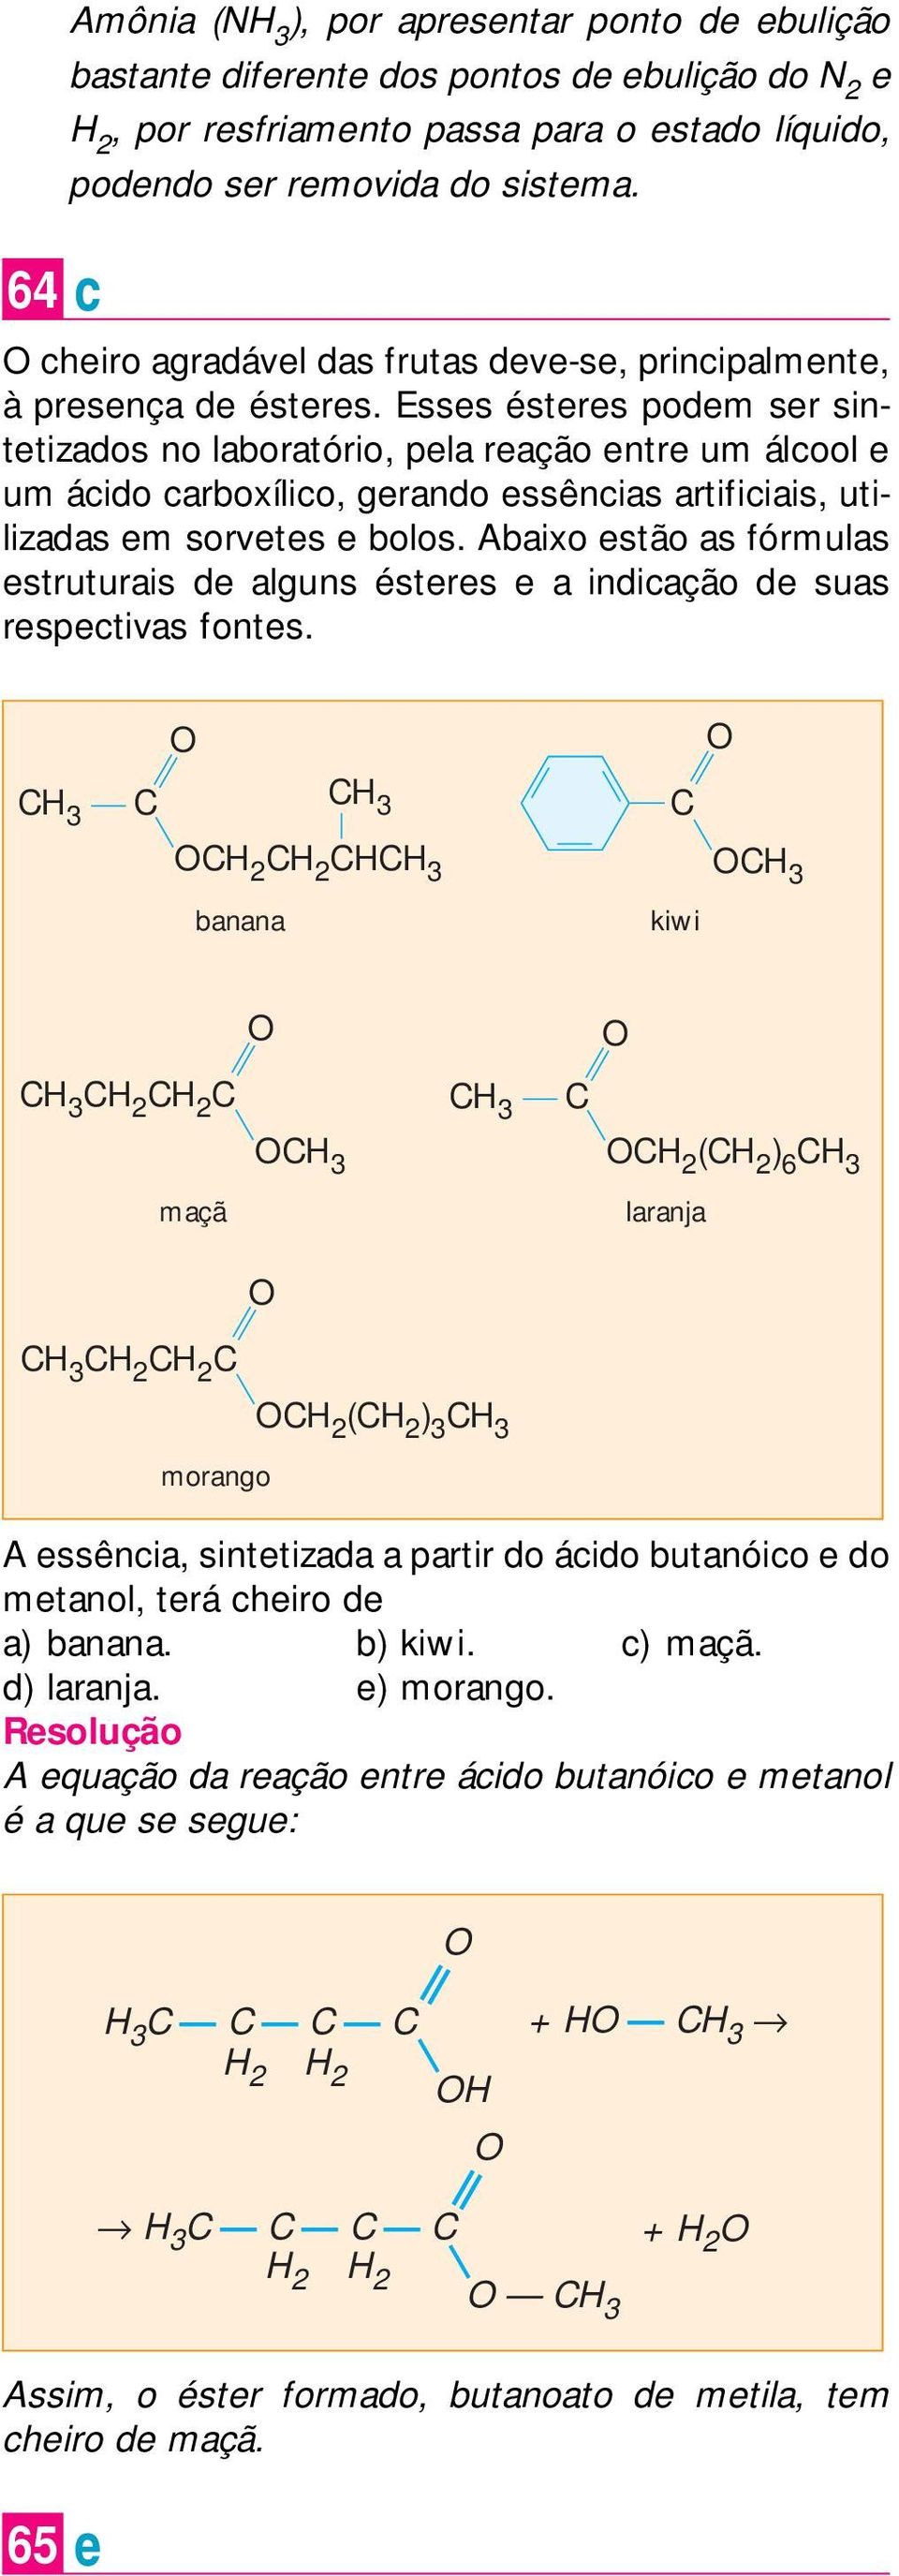 Esses ésteres podem ser sintetizados no laboratório, pela reação entre um álcool e um ácido carboxílico, gerando essências artificiais, utilizadas em sorvetes e bolos.